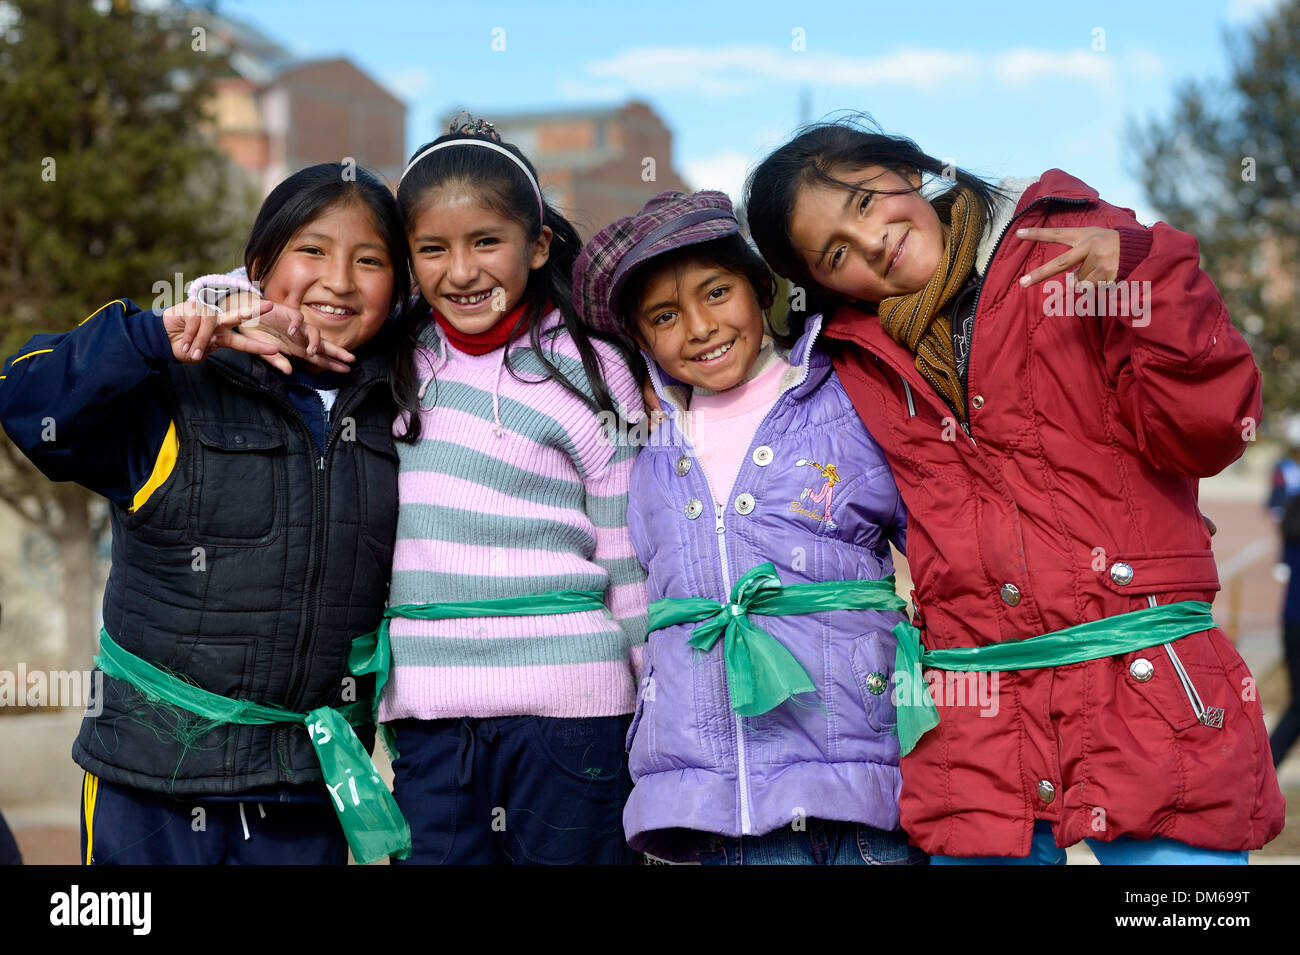 Petites amies, El Alto, département de La Paz, Bolivie Banque D'Images